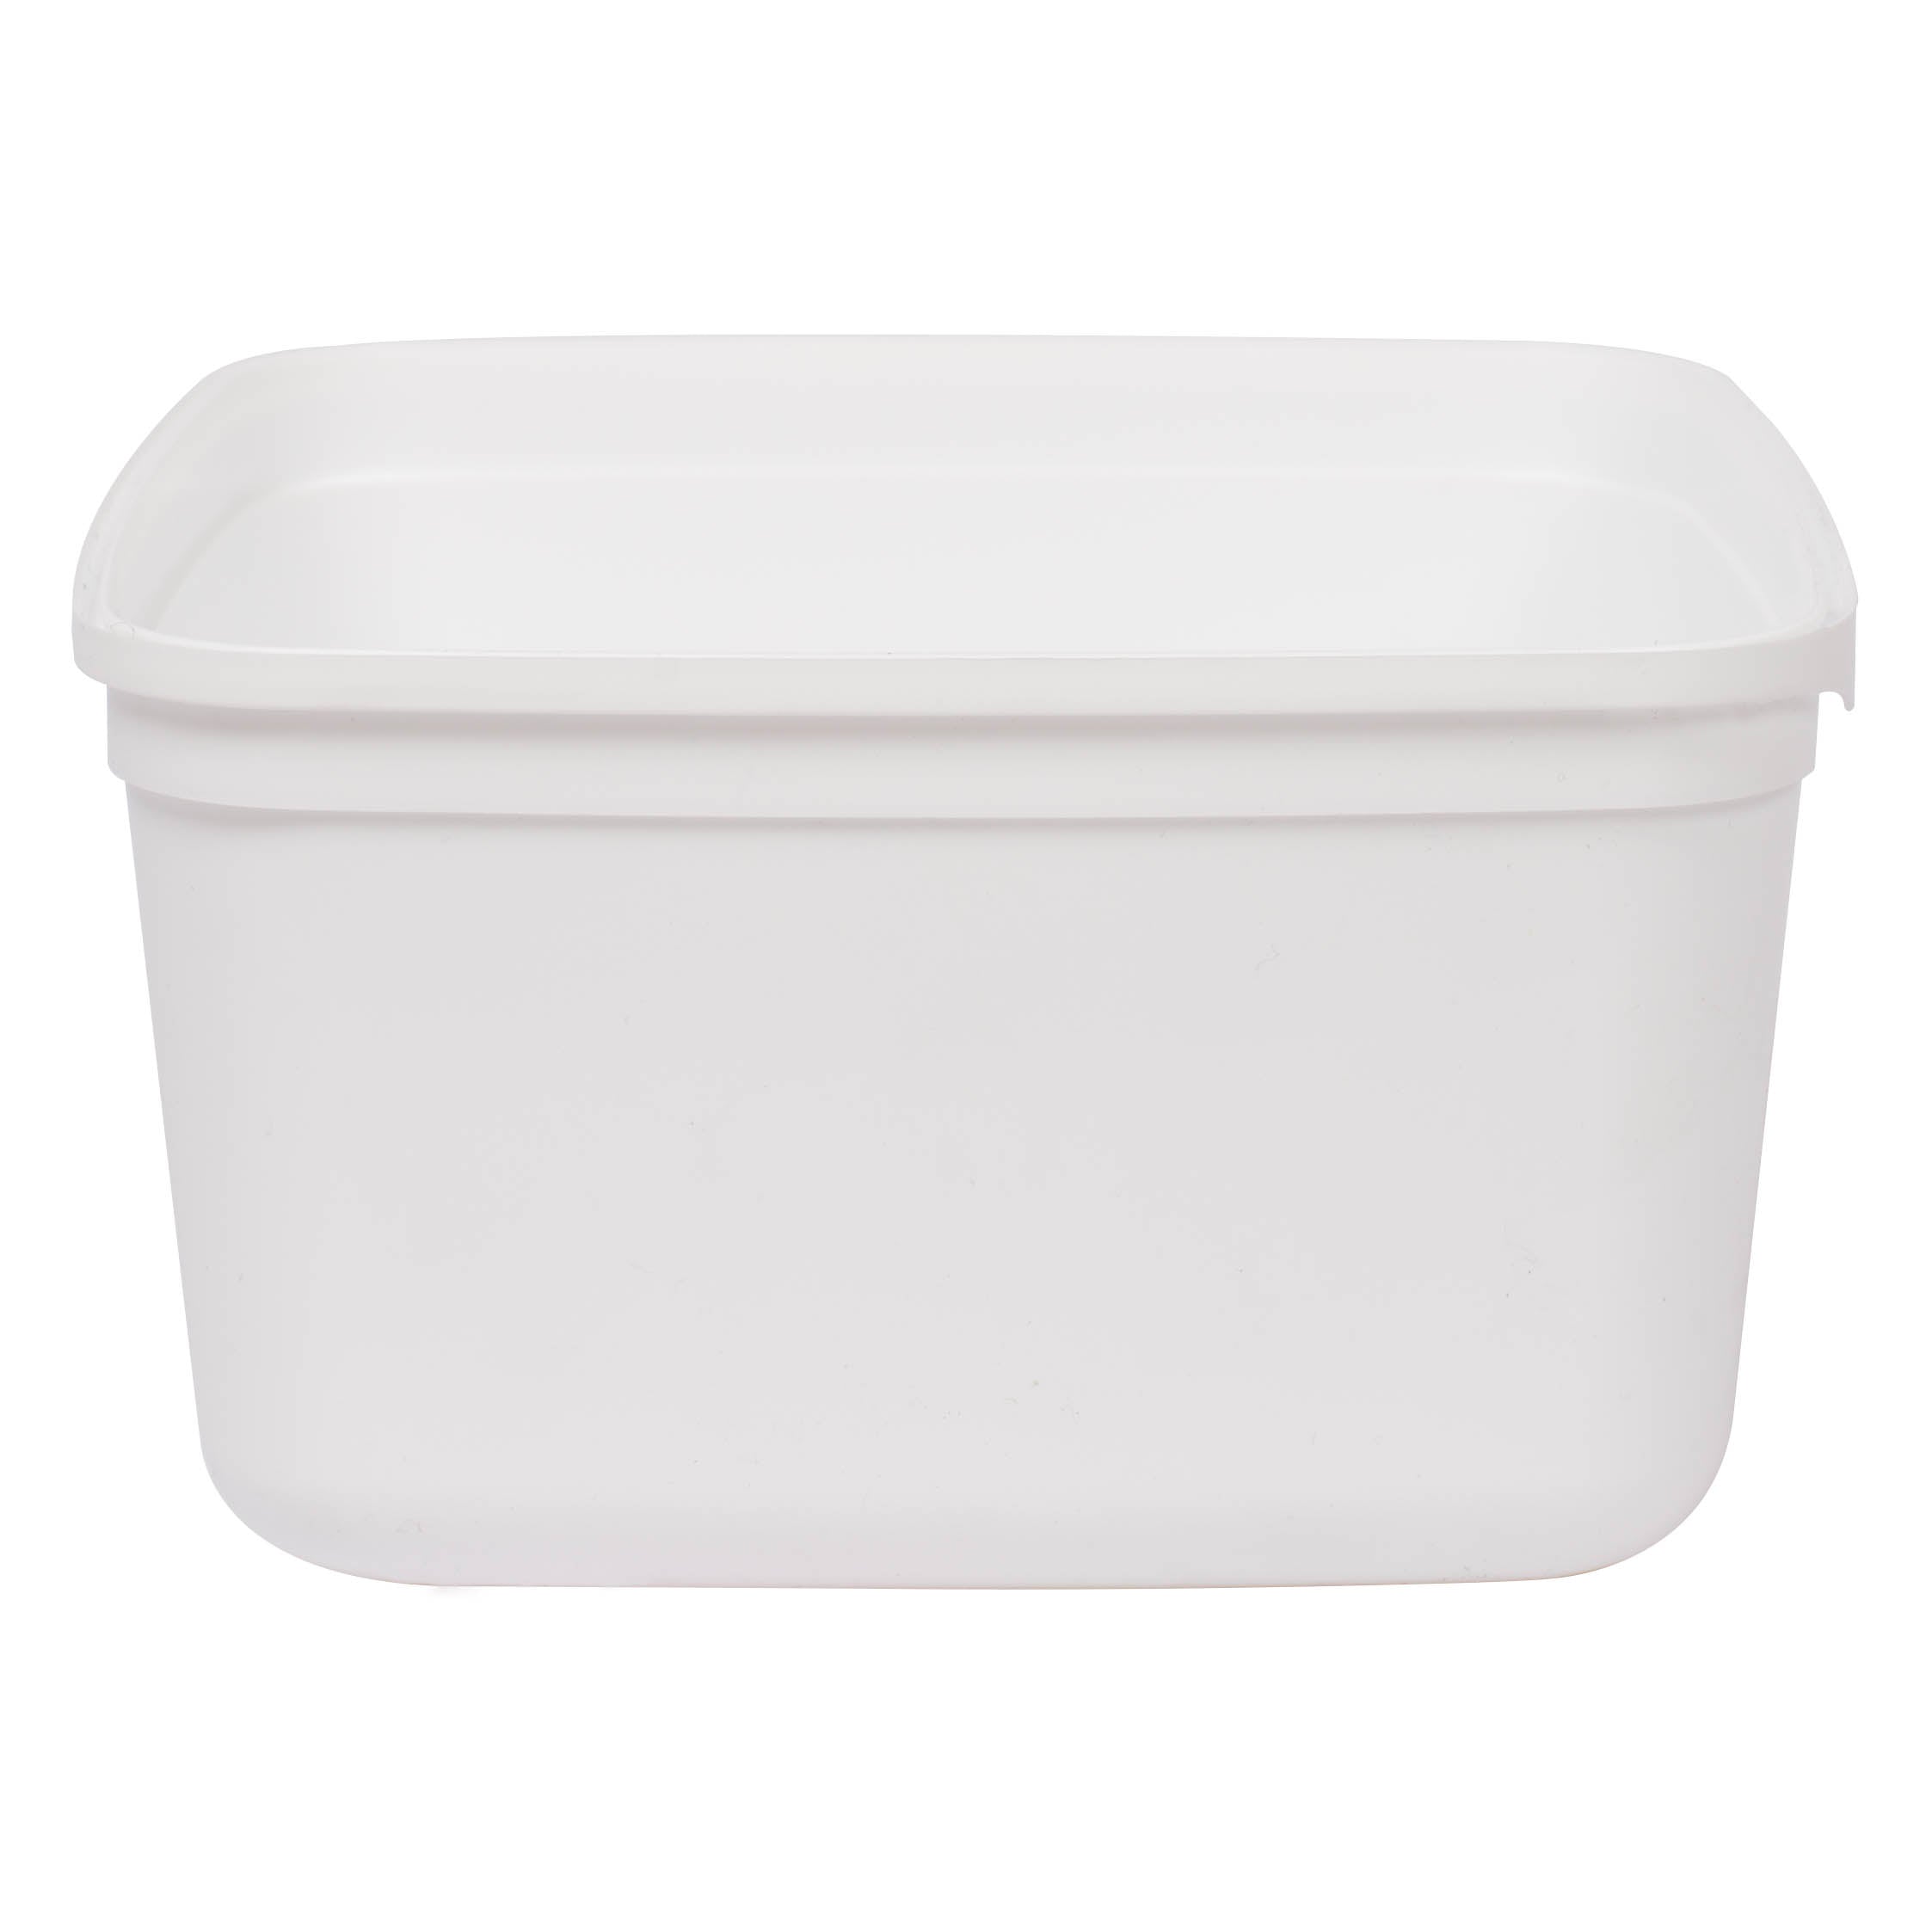 2L Ice Cream Tub Container White 5pack